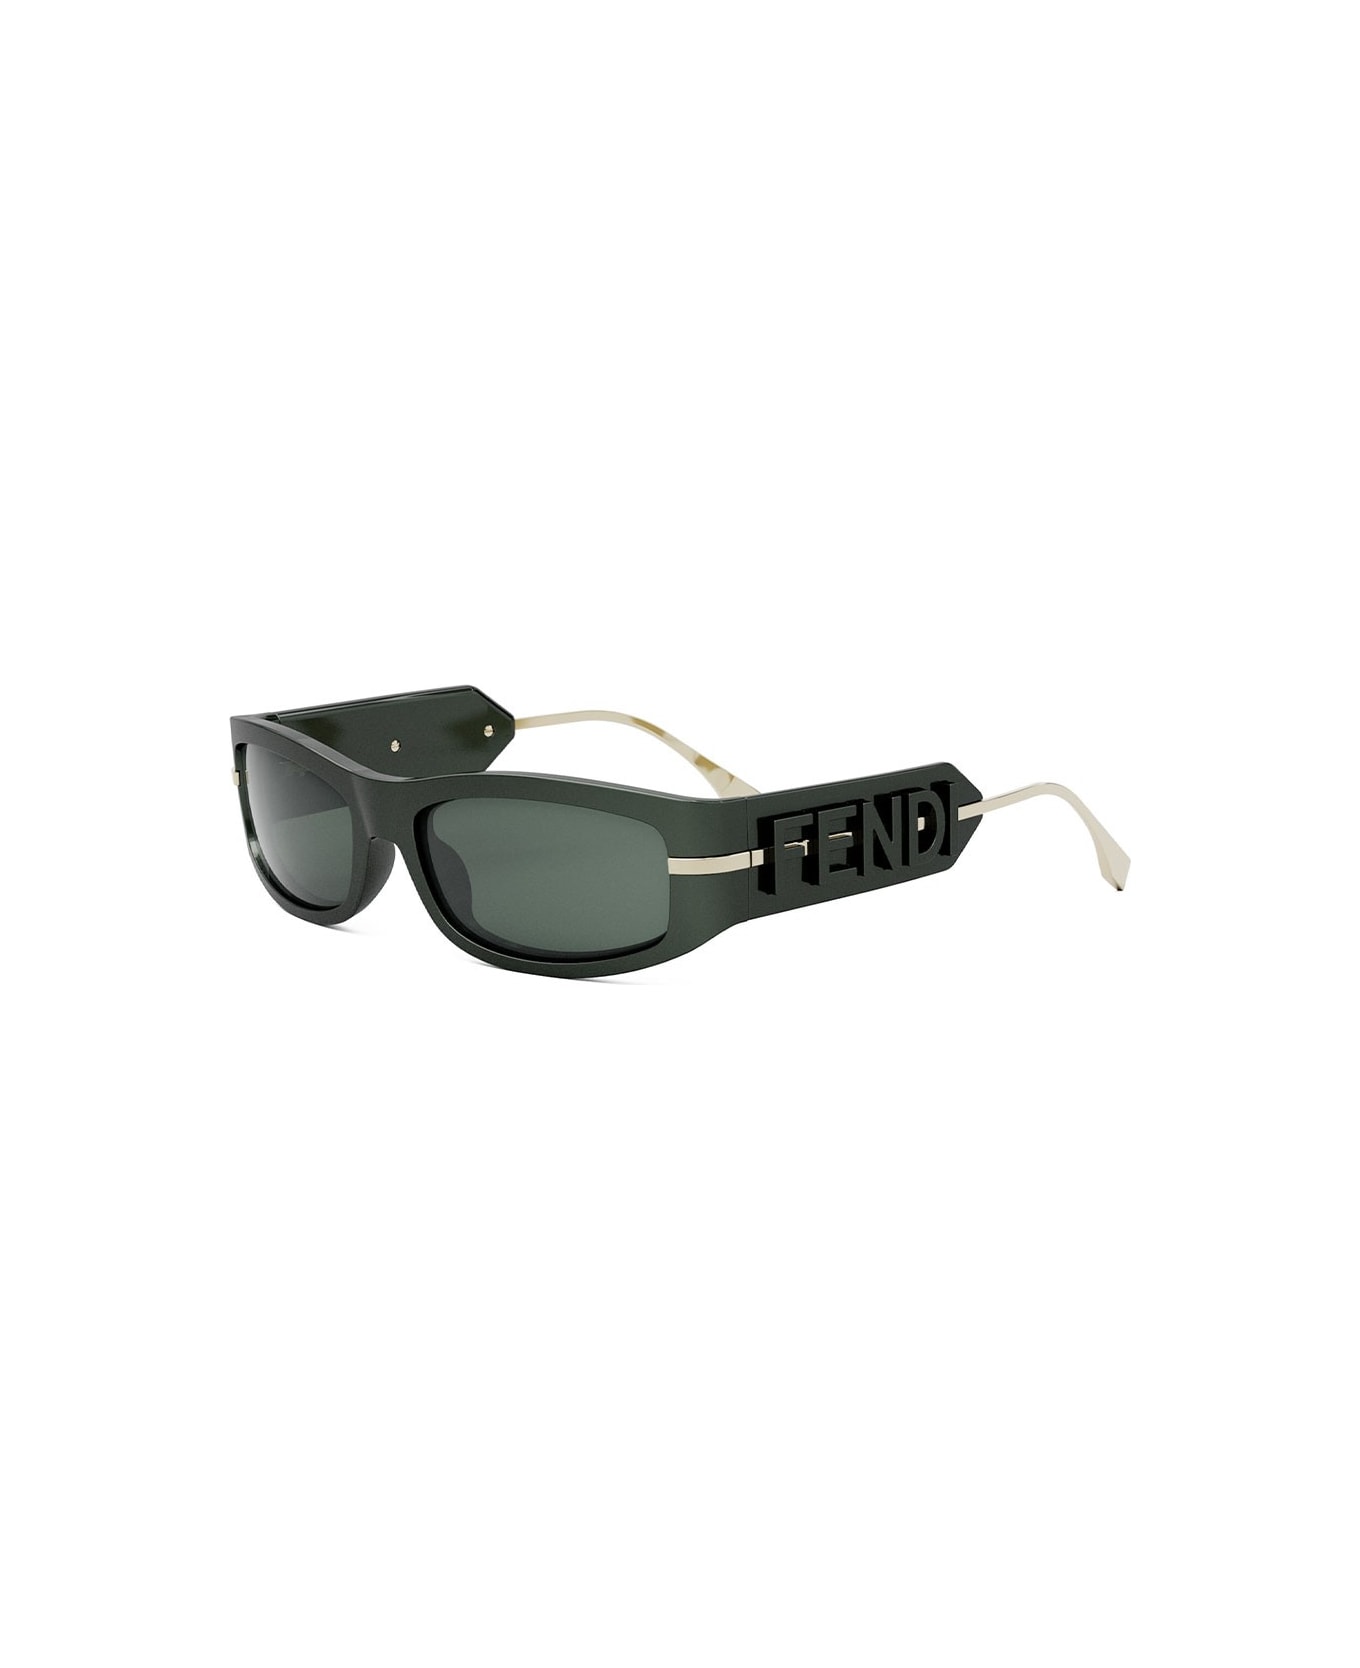 Fendi Eyewear Sunglasses - Verde/Verde